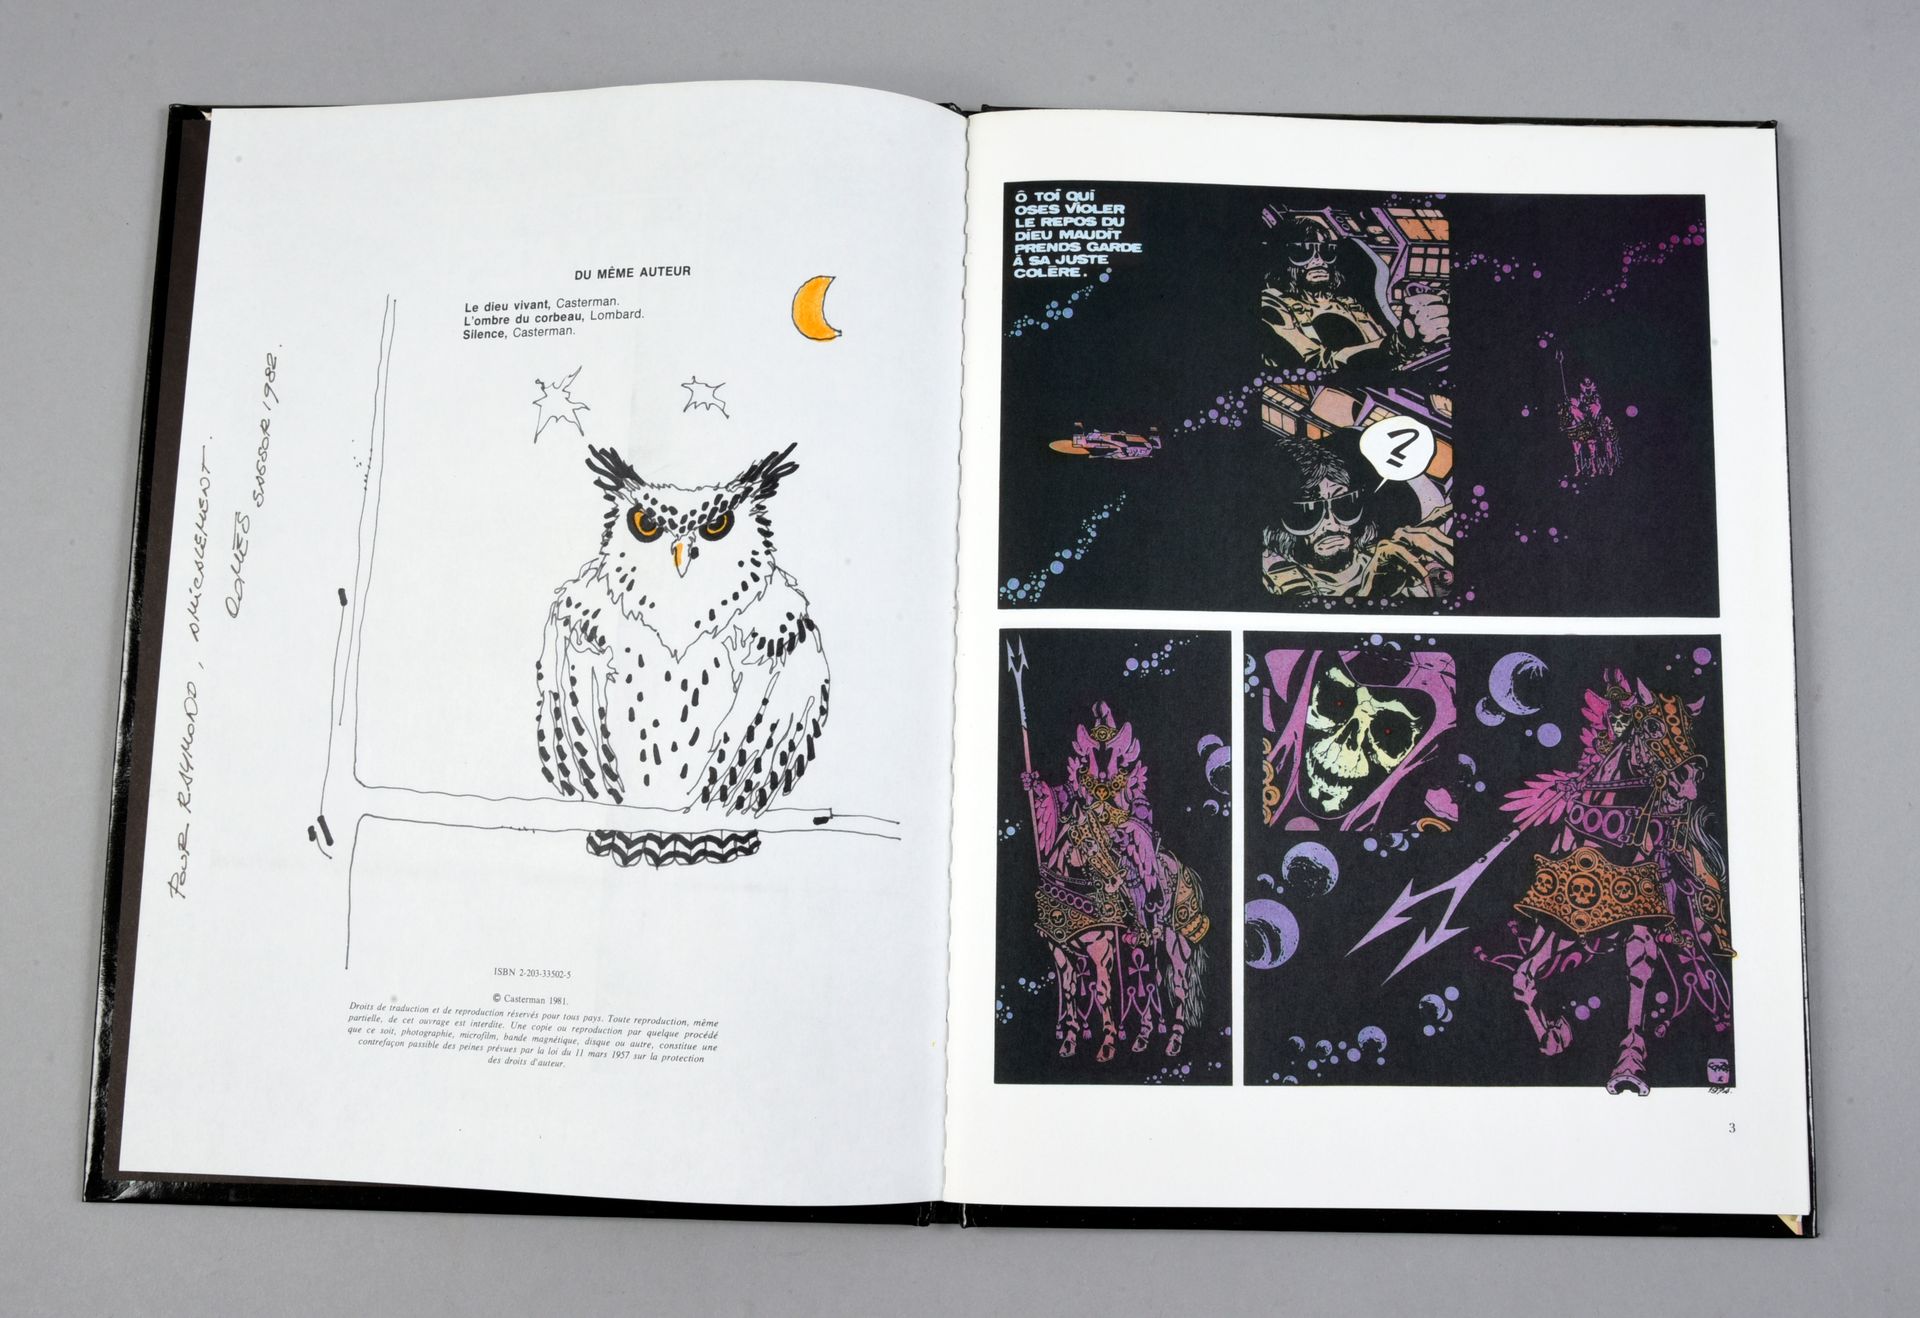 COMES 黑暗的主人。卡斯特曼原版，有一张猫头鹰的毛笔献词图。签名和日期为1982年。相册处于近乎完美的状态。